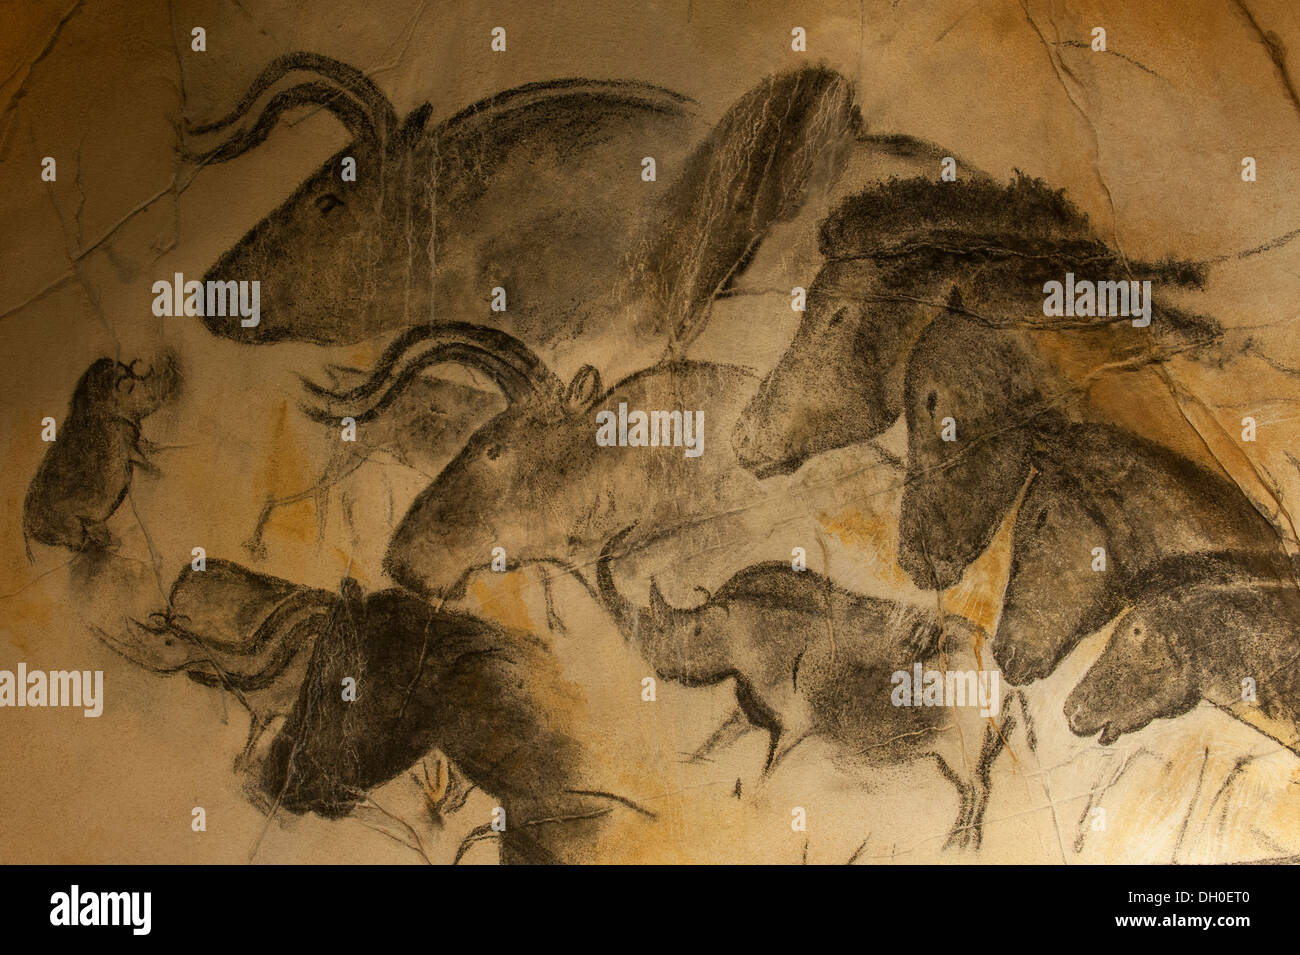 Réplique de peintures rupestres préhistoriques de rhinocéros laineux et aurochs, grotte Chauvet / Grotte Chauvet-Pont-d'Arc, Ardèche, France Banque D'Images